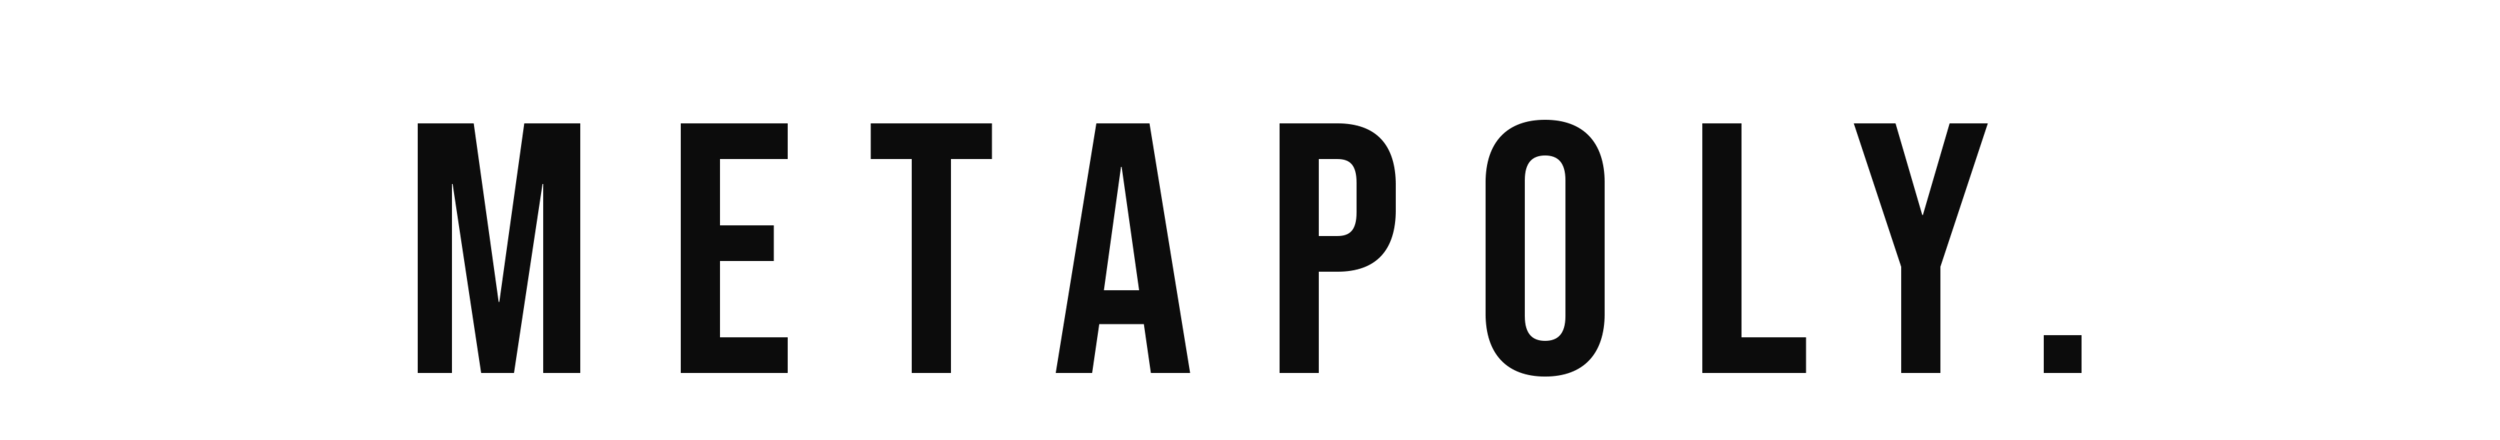 METAPOLY logo.png